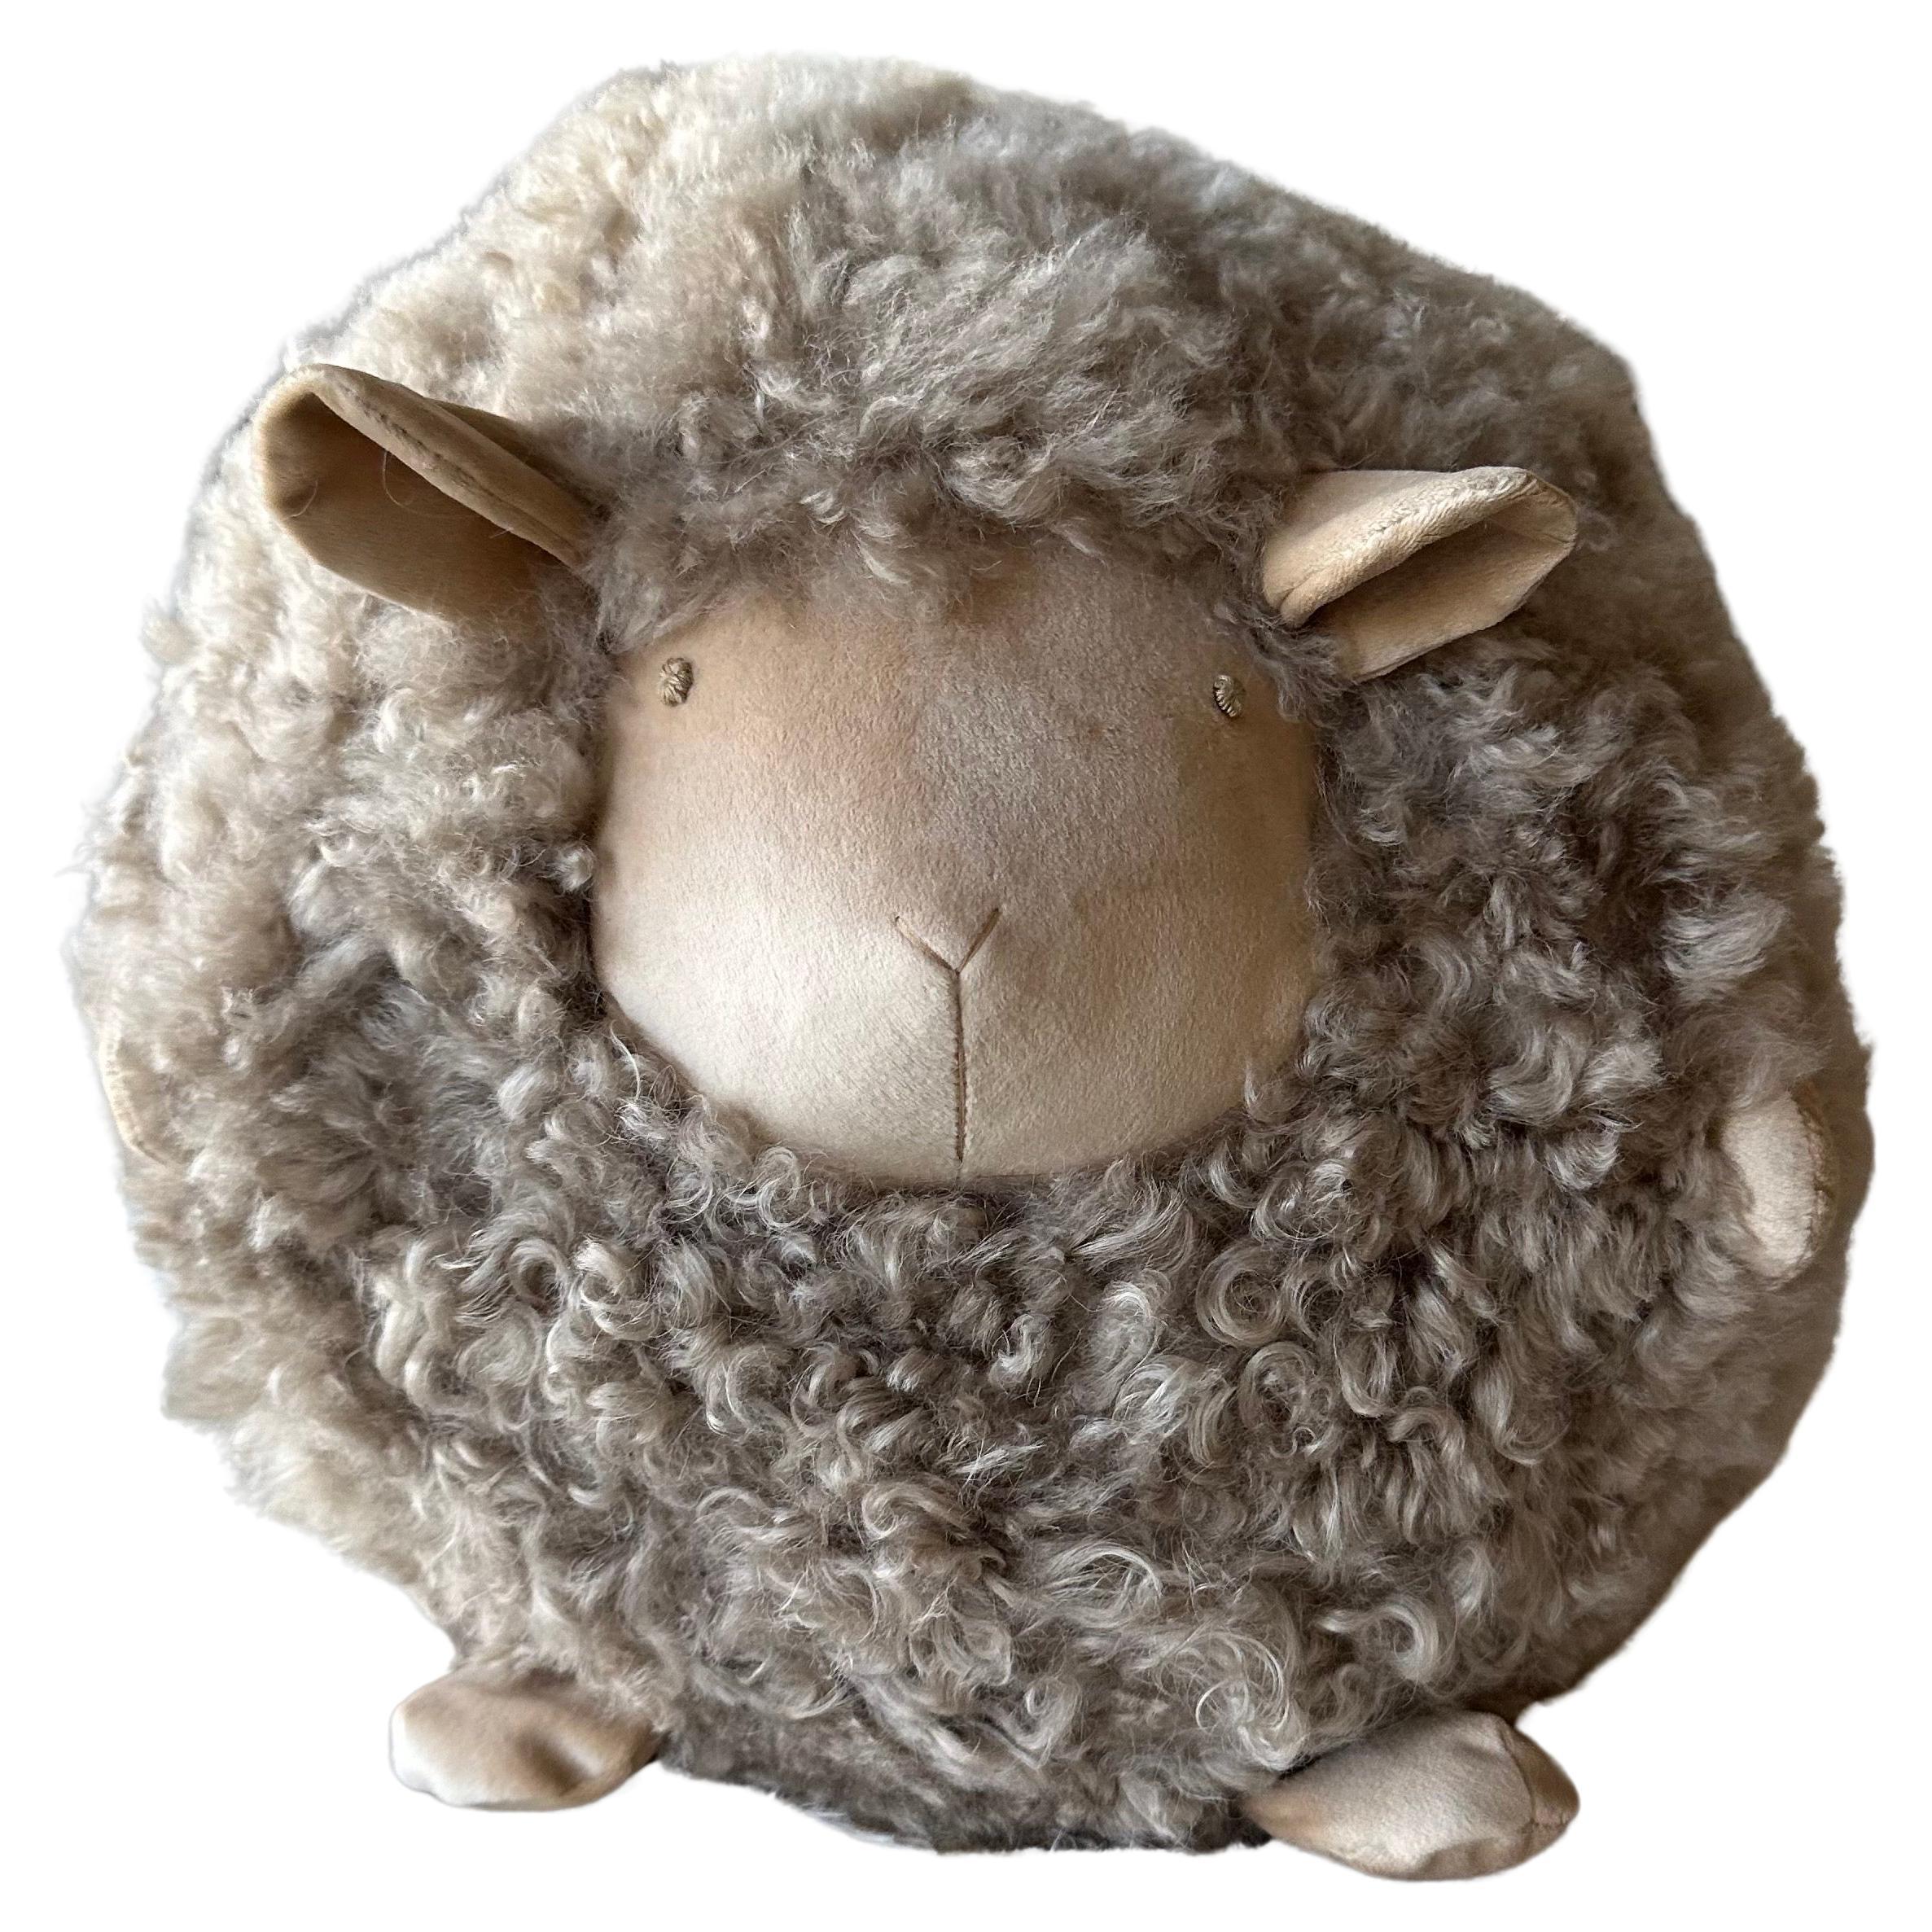 Custom Lambs Wool Decorative Sheep Pillow 